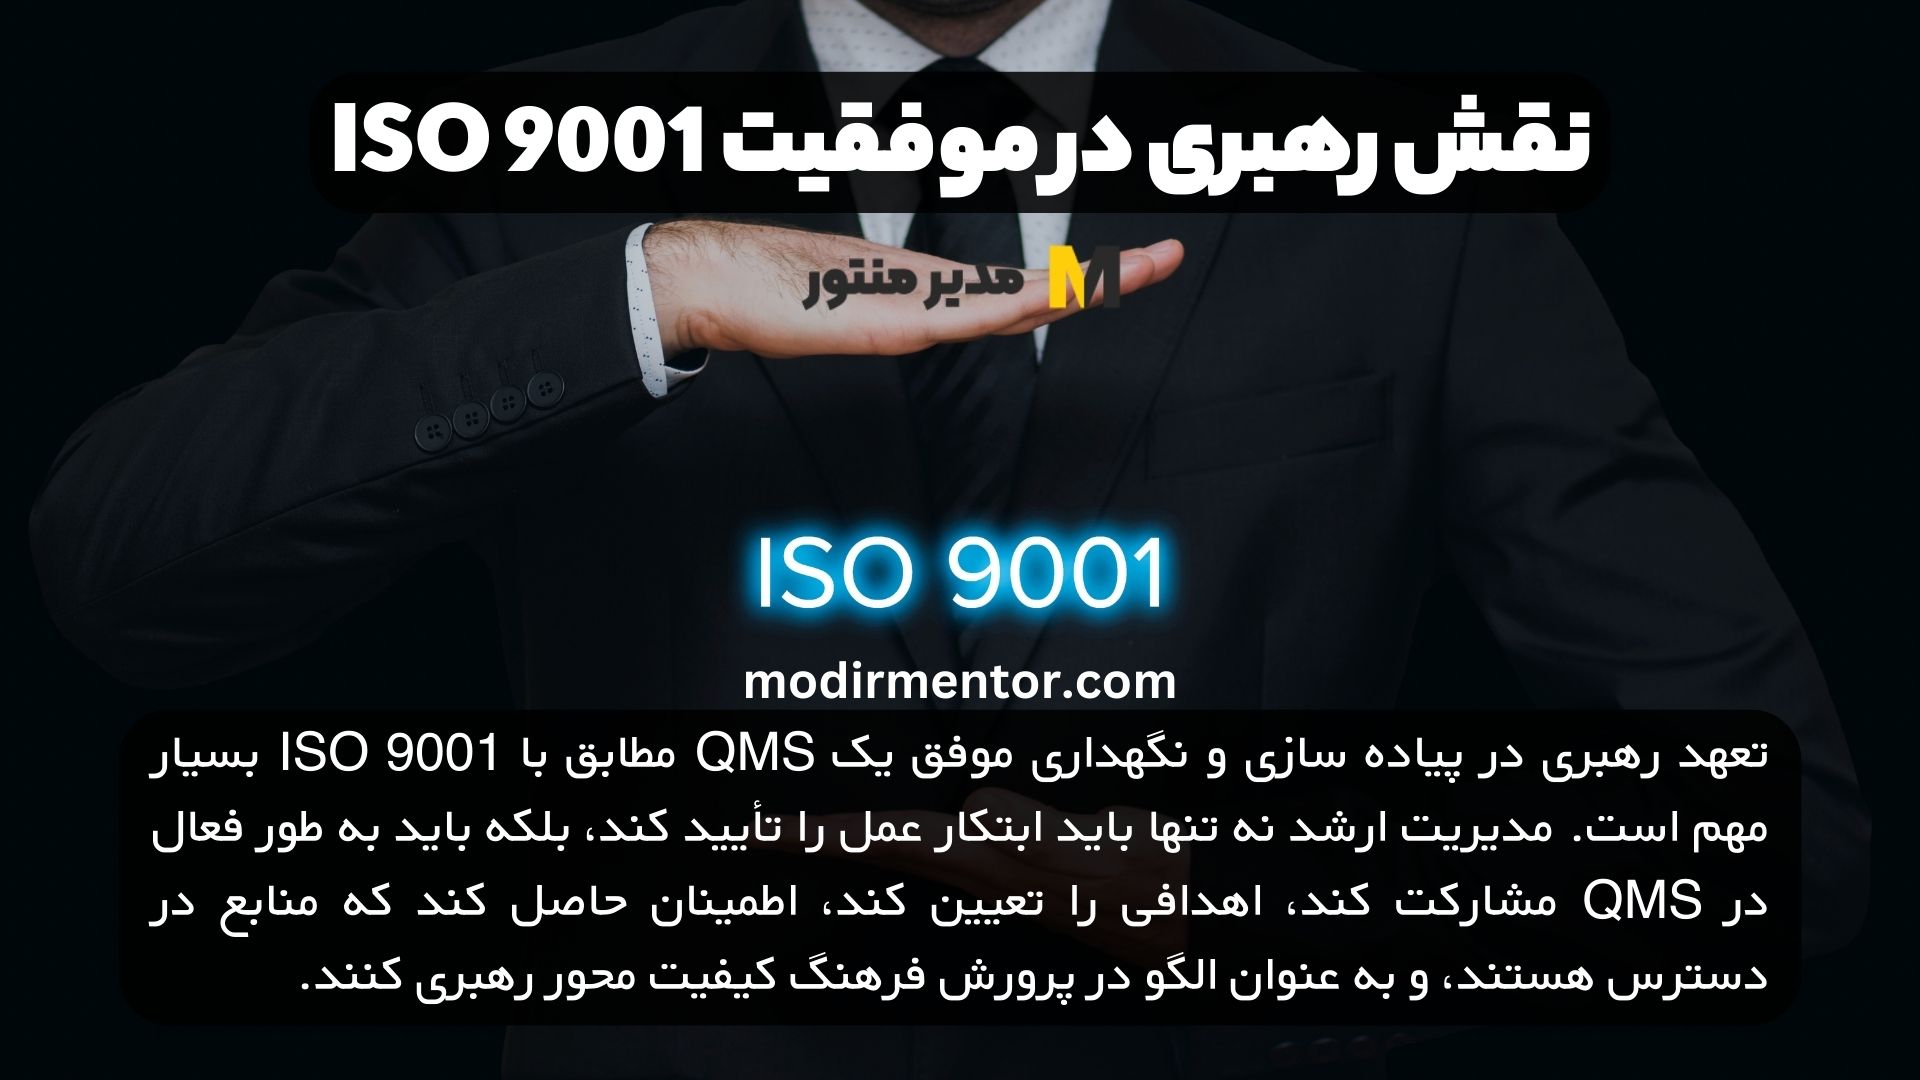 نقش رهبری در موفقیت ISO 9001